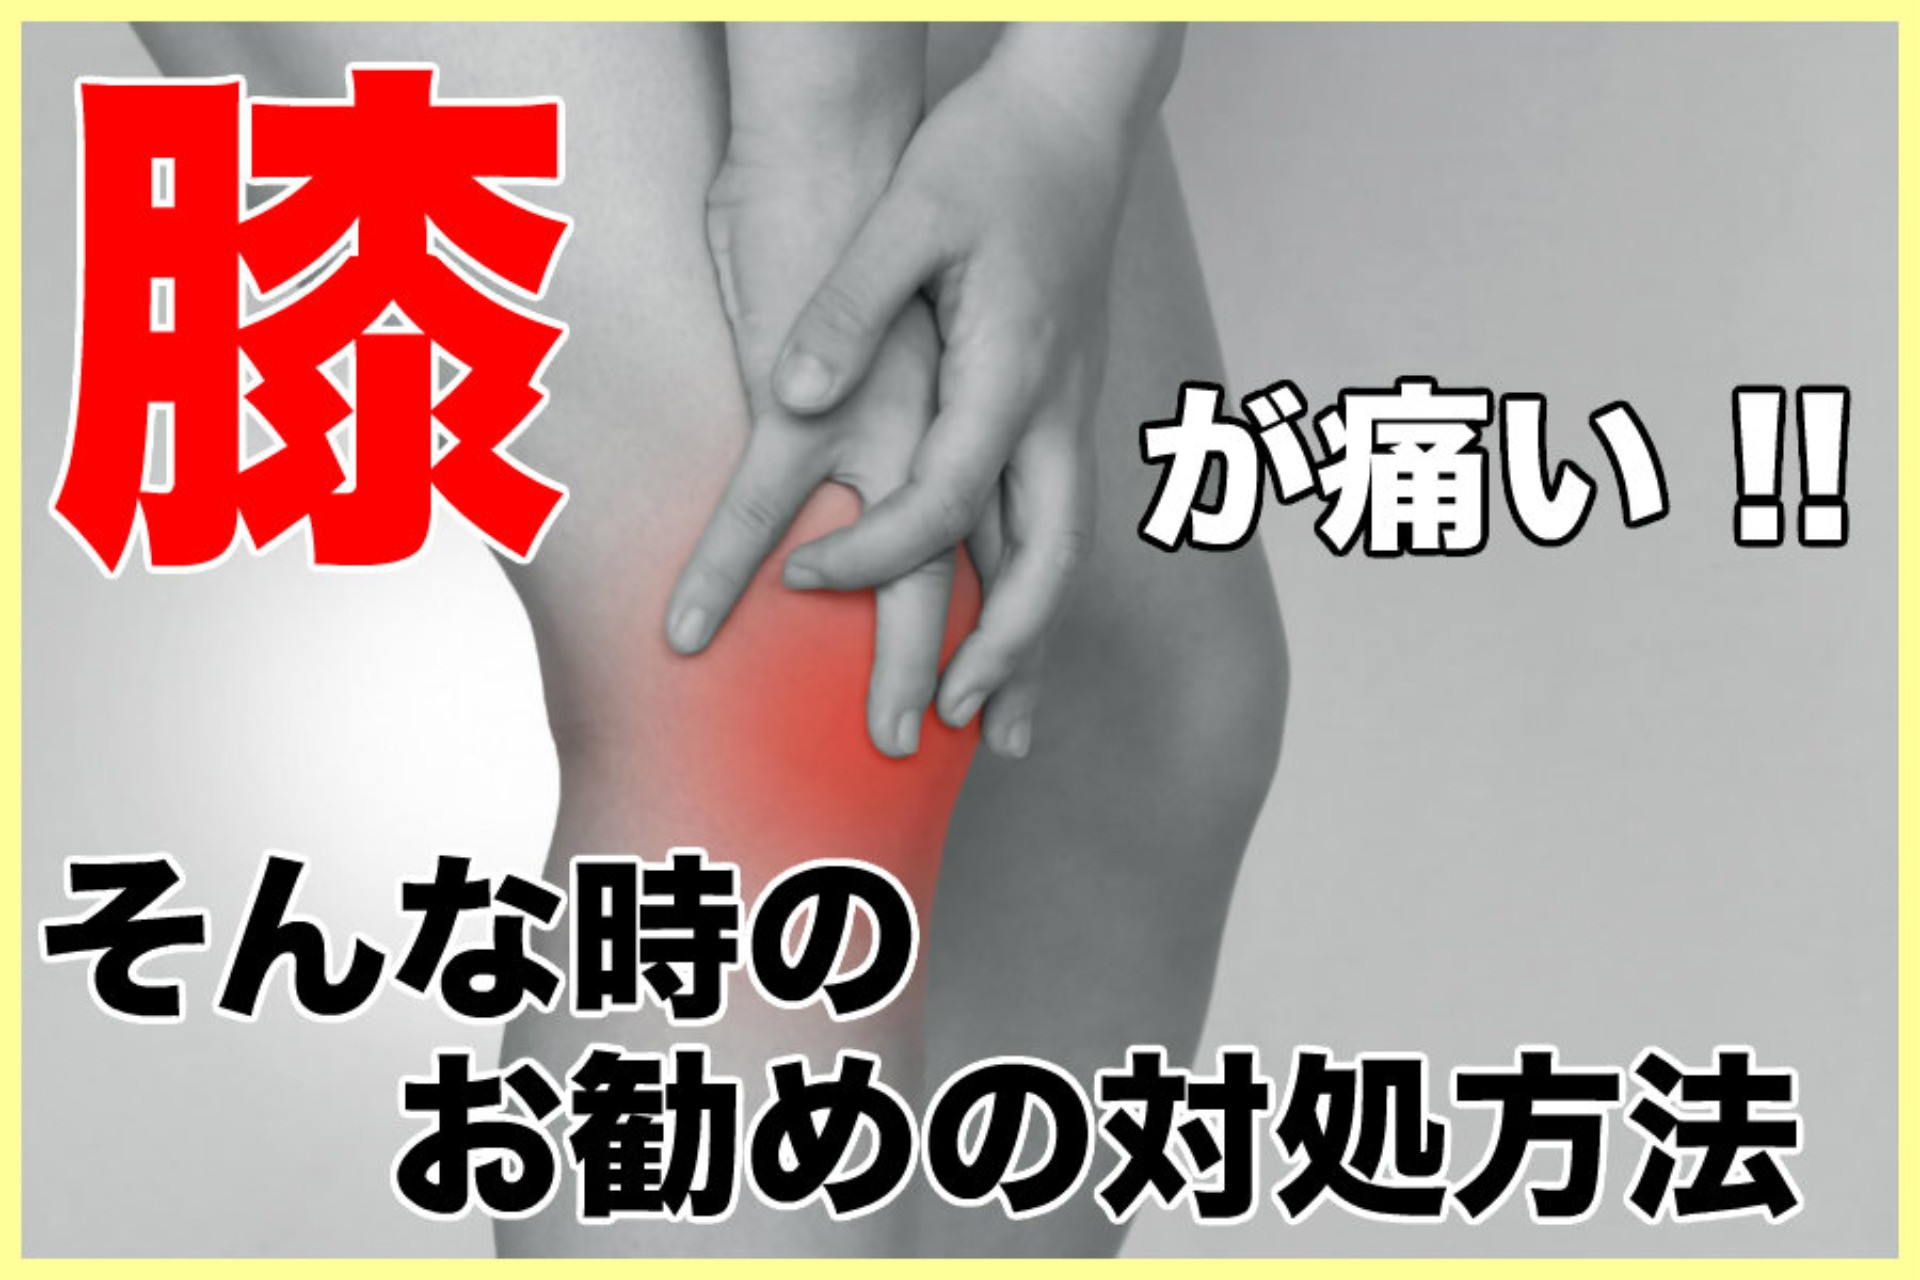 膝が痛くて痛くてどうしようもない岡山市の方へ。おすすめの対処方法があります。